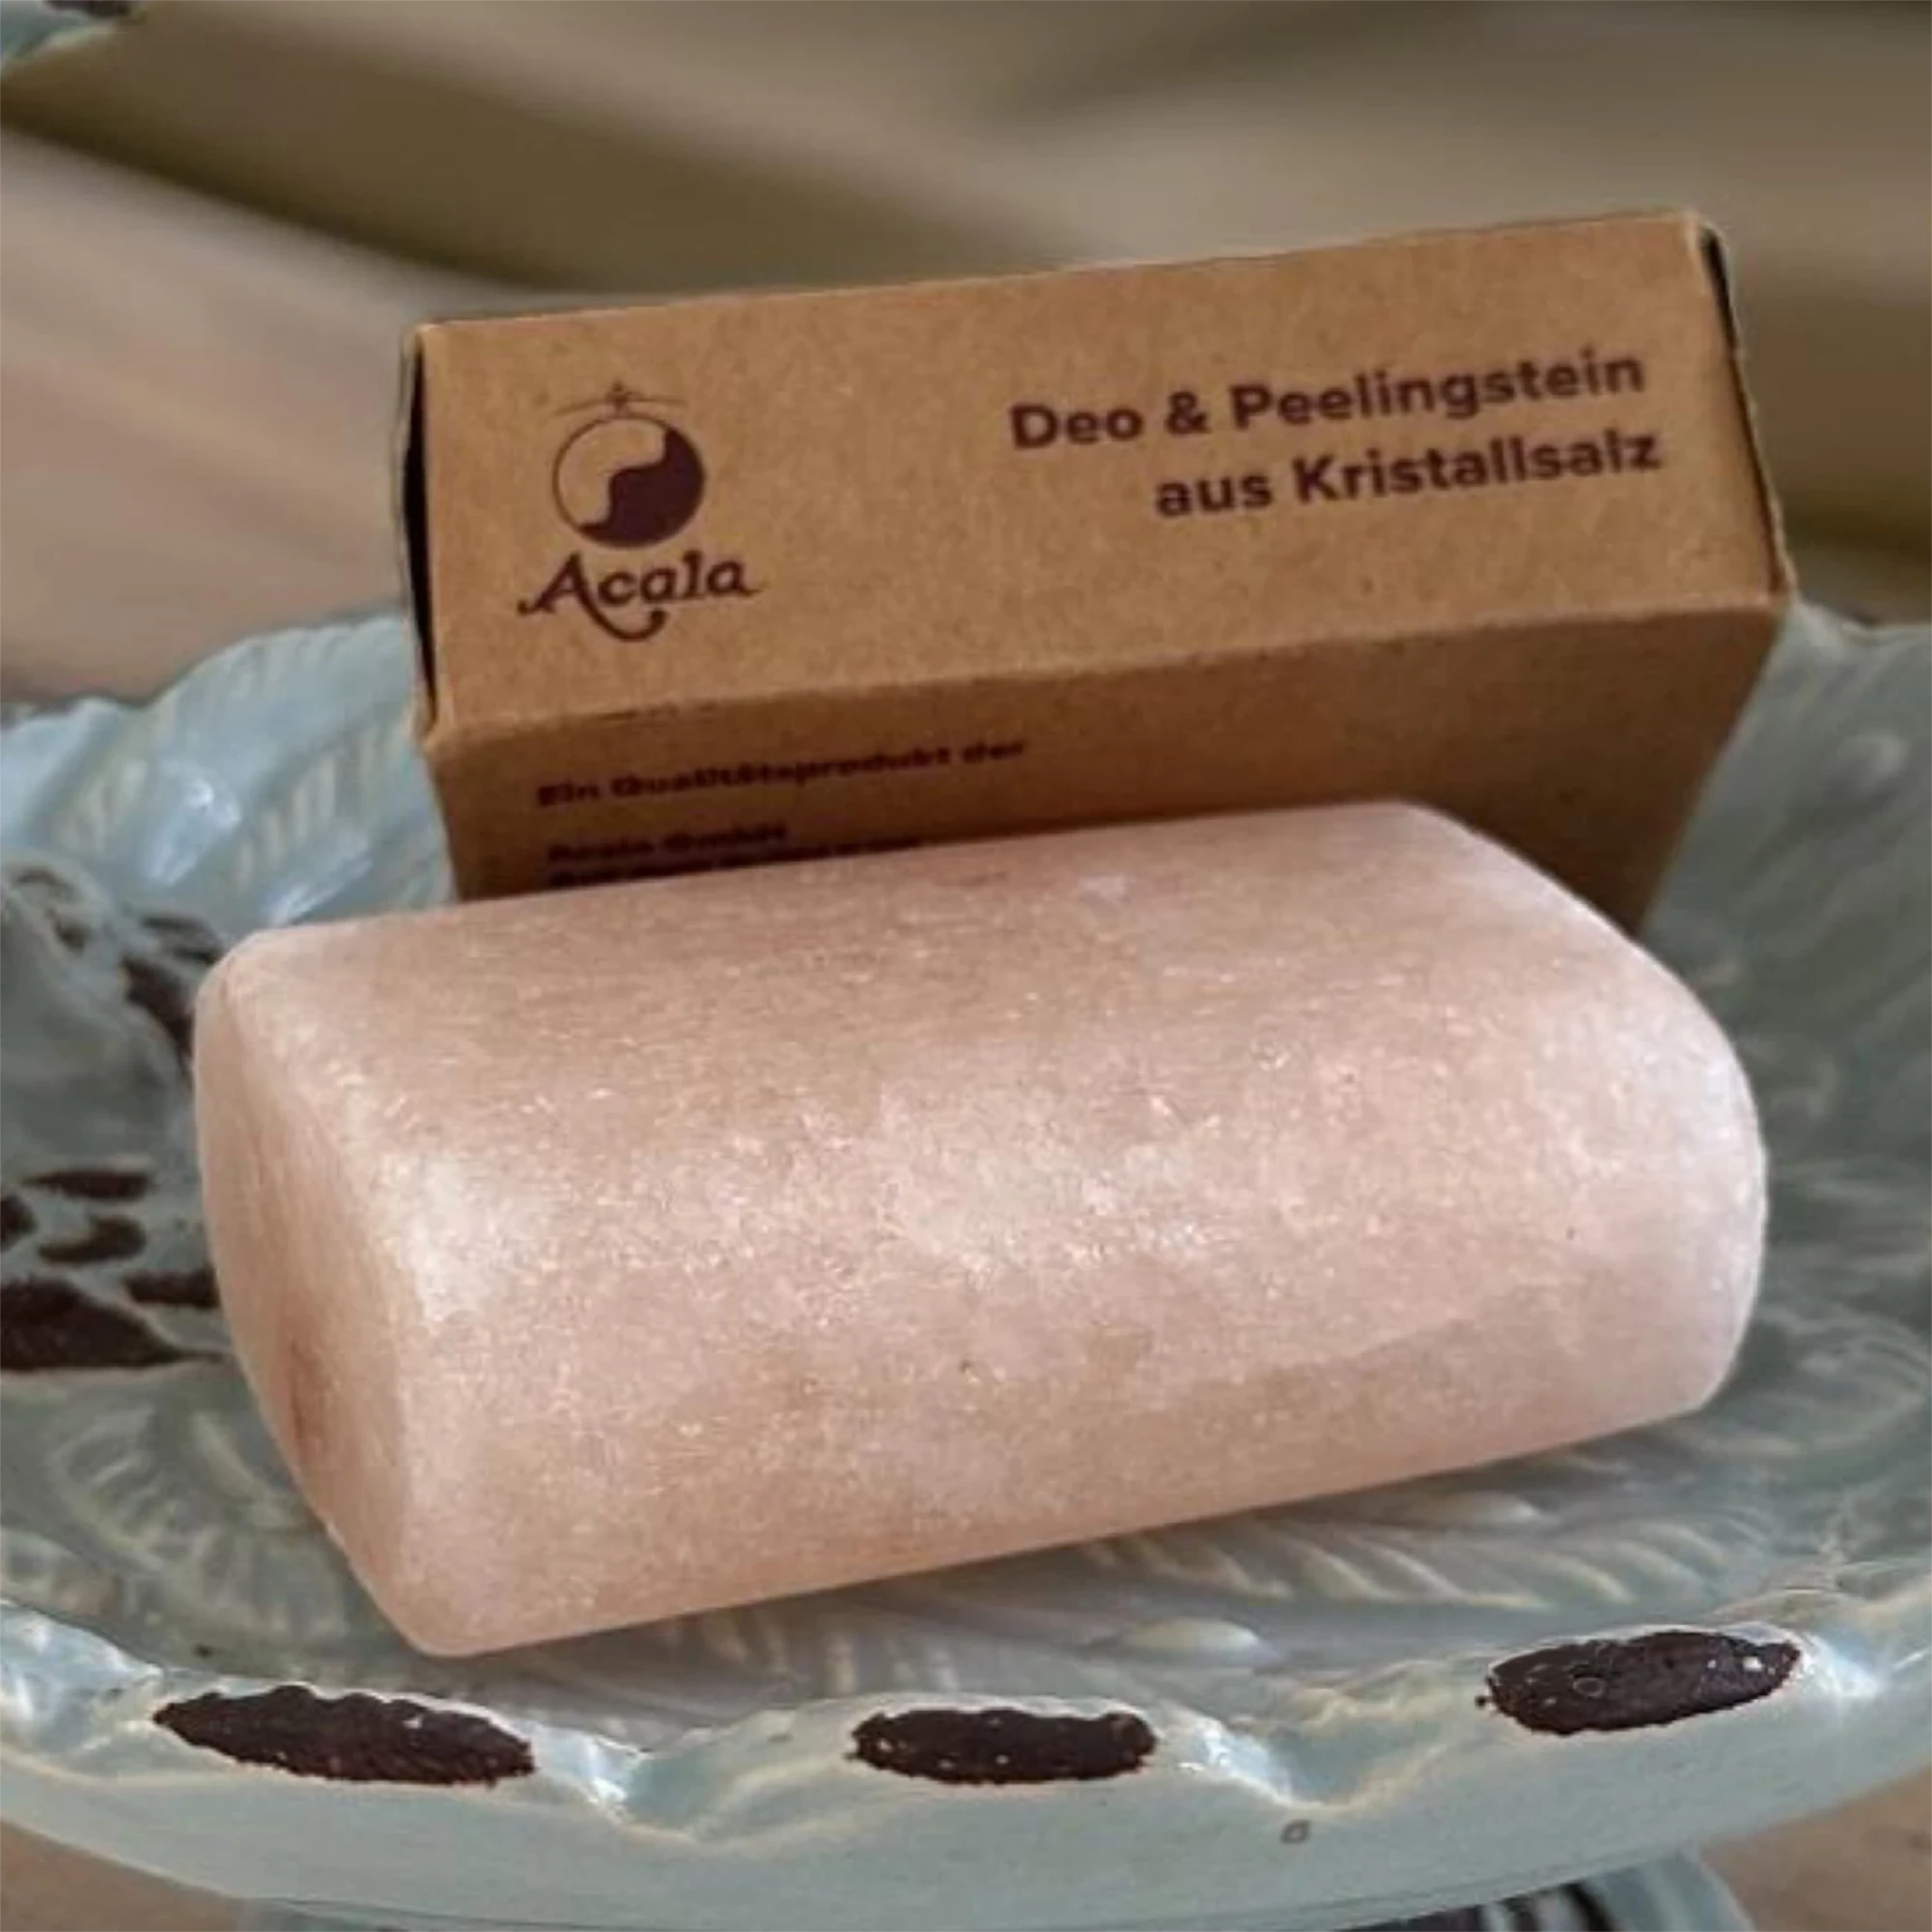 Zu sehen ist ein Salz Deo Stein von Acala. Er sieht aus wie ein Stück Seife, liegt in einer Porzellan Schale und dahinter sieht man den braunen Verpackungskarton.